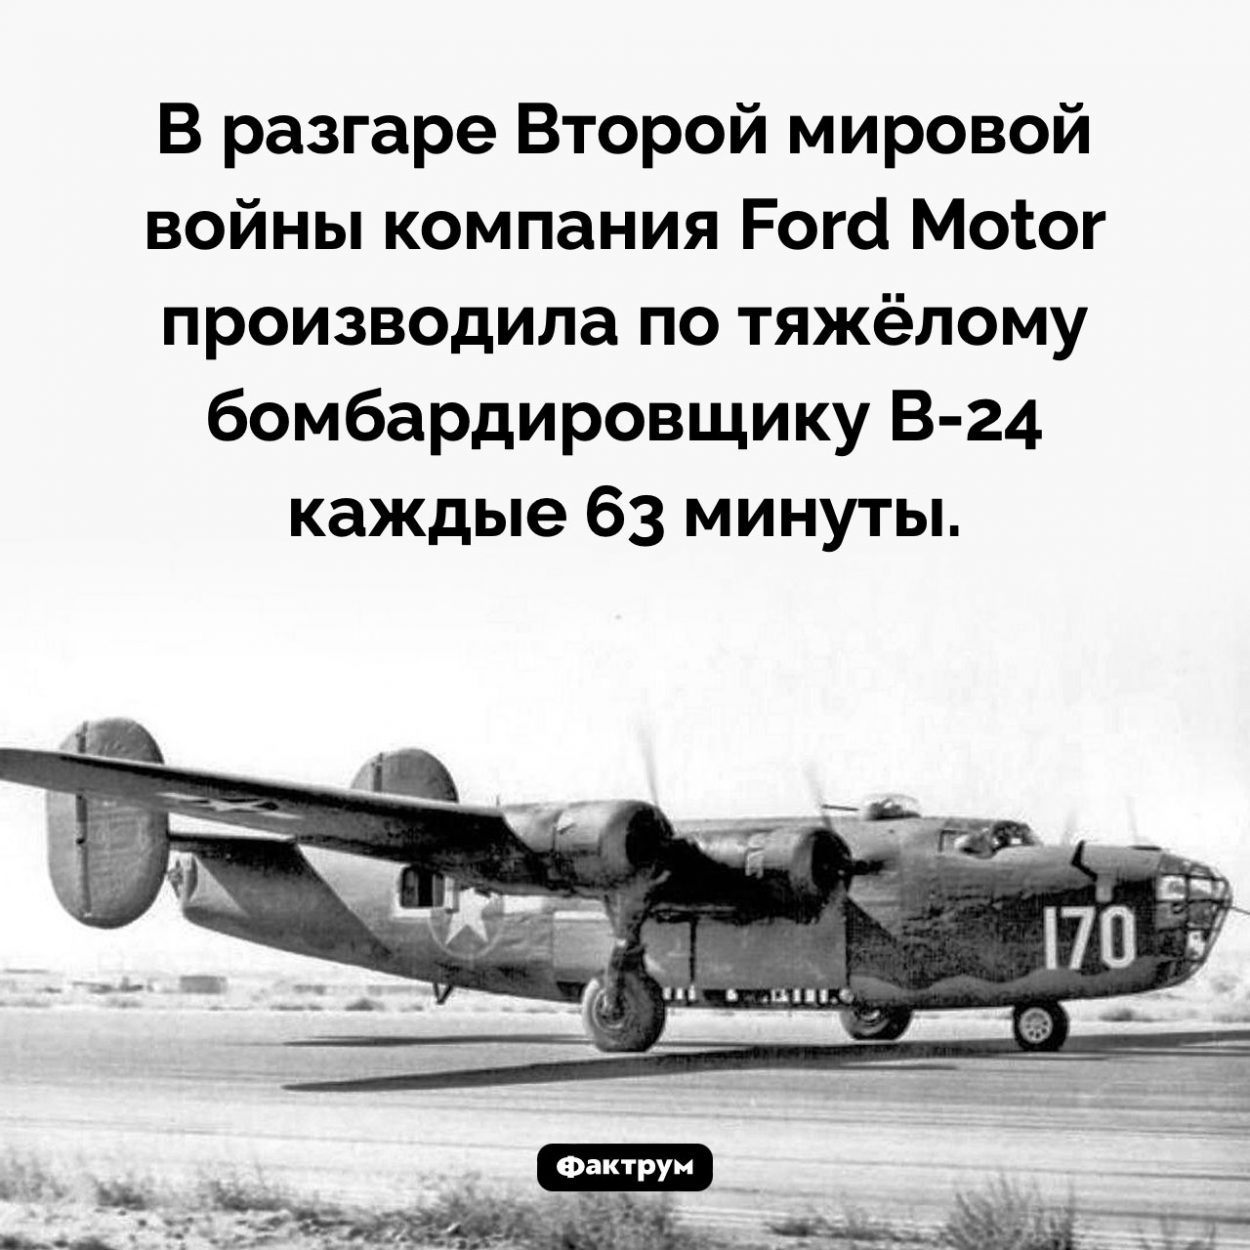 В час по бомбардировщику. В разгаре Второй мировой войны компания Ford Motor производила по тяжёлому бомбардировщику B-24 каждые 63 минуты.